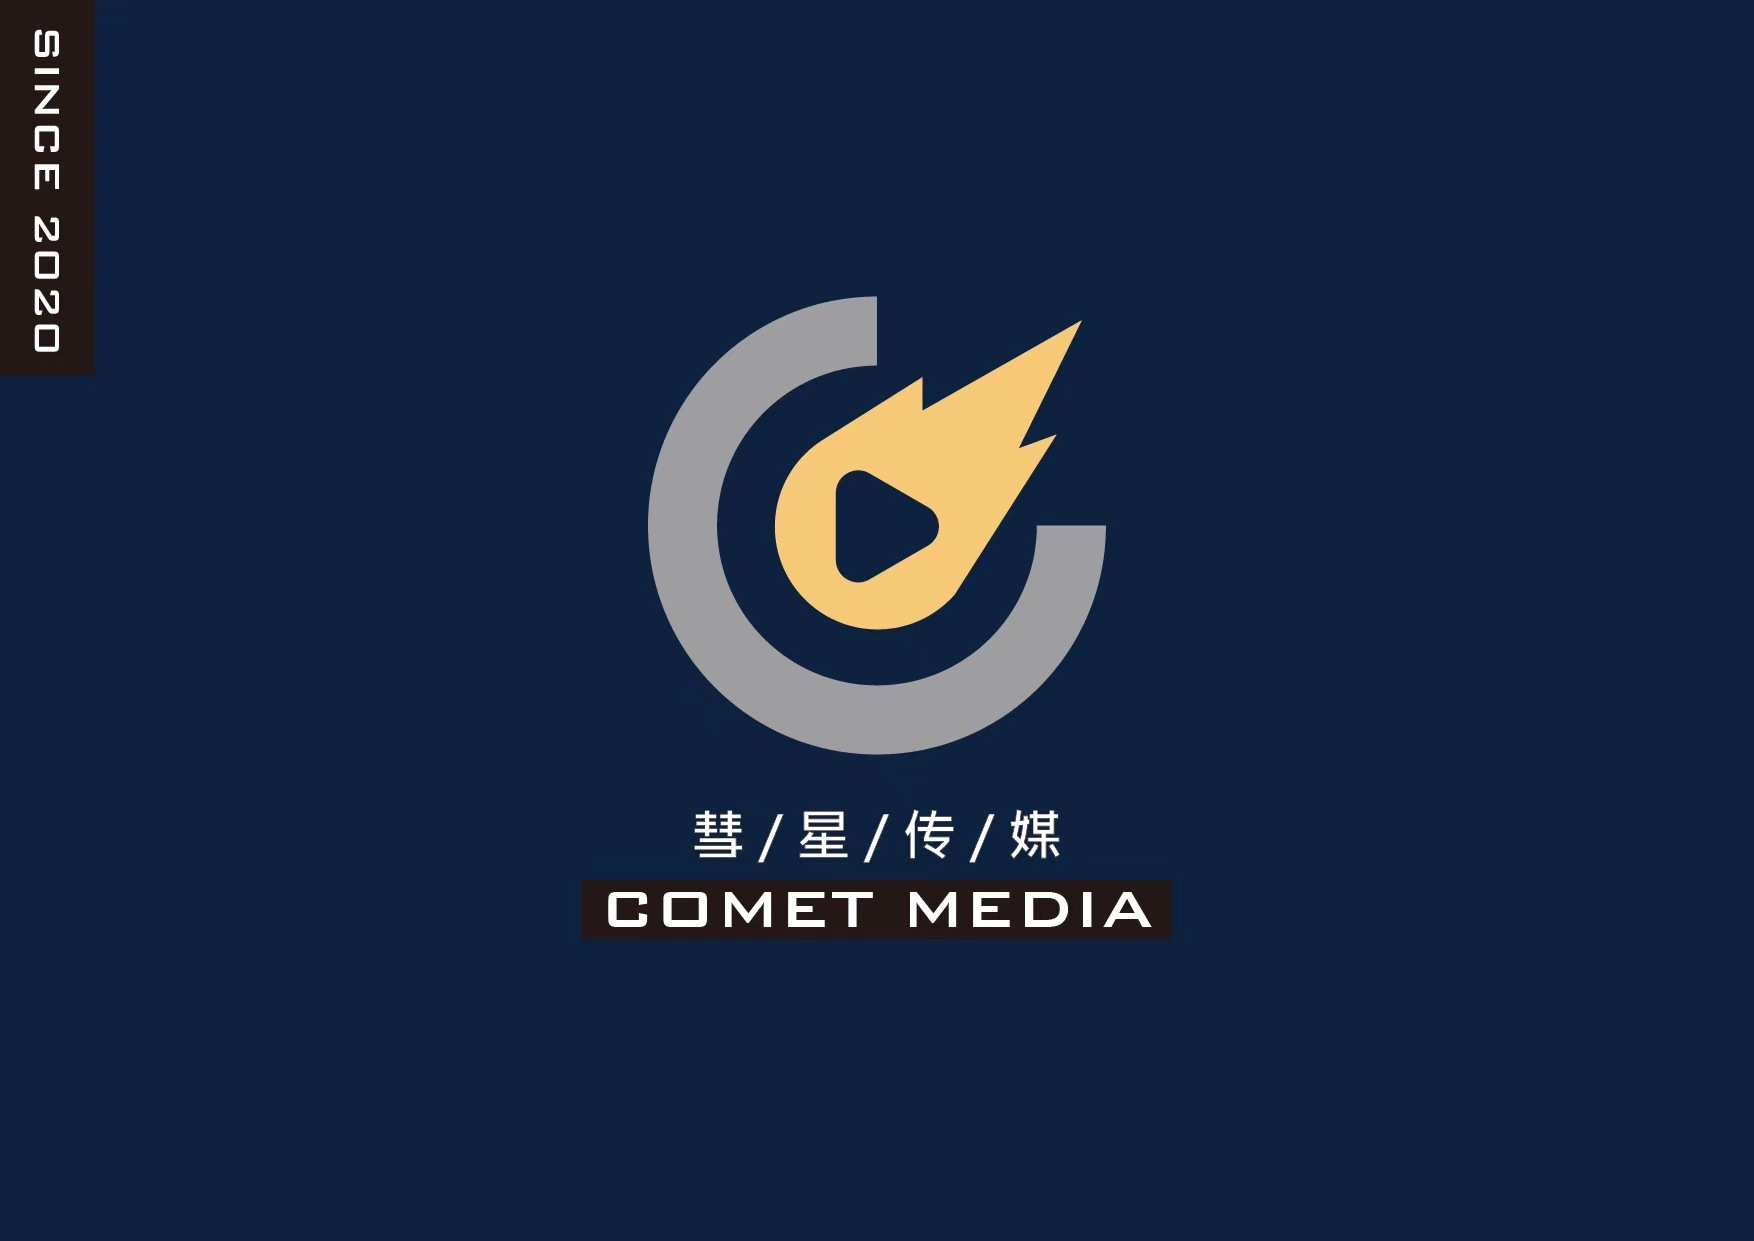 广州彗星传媒有限公司